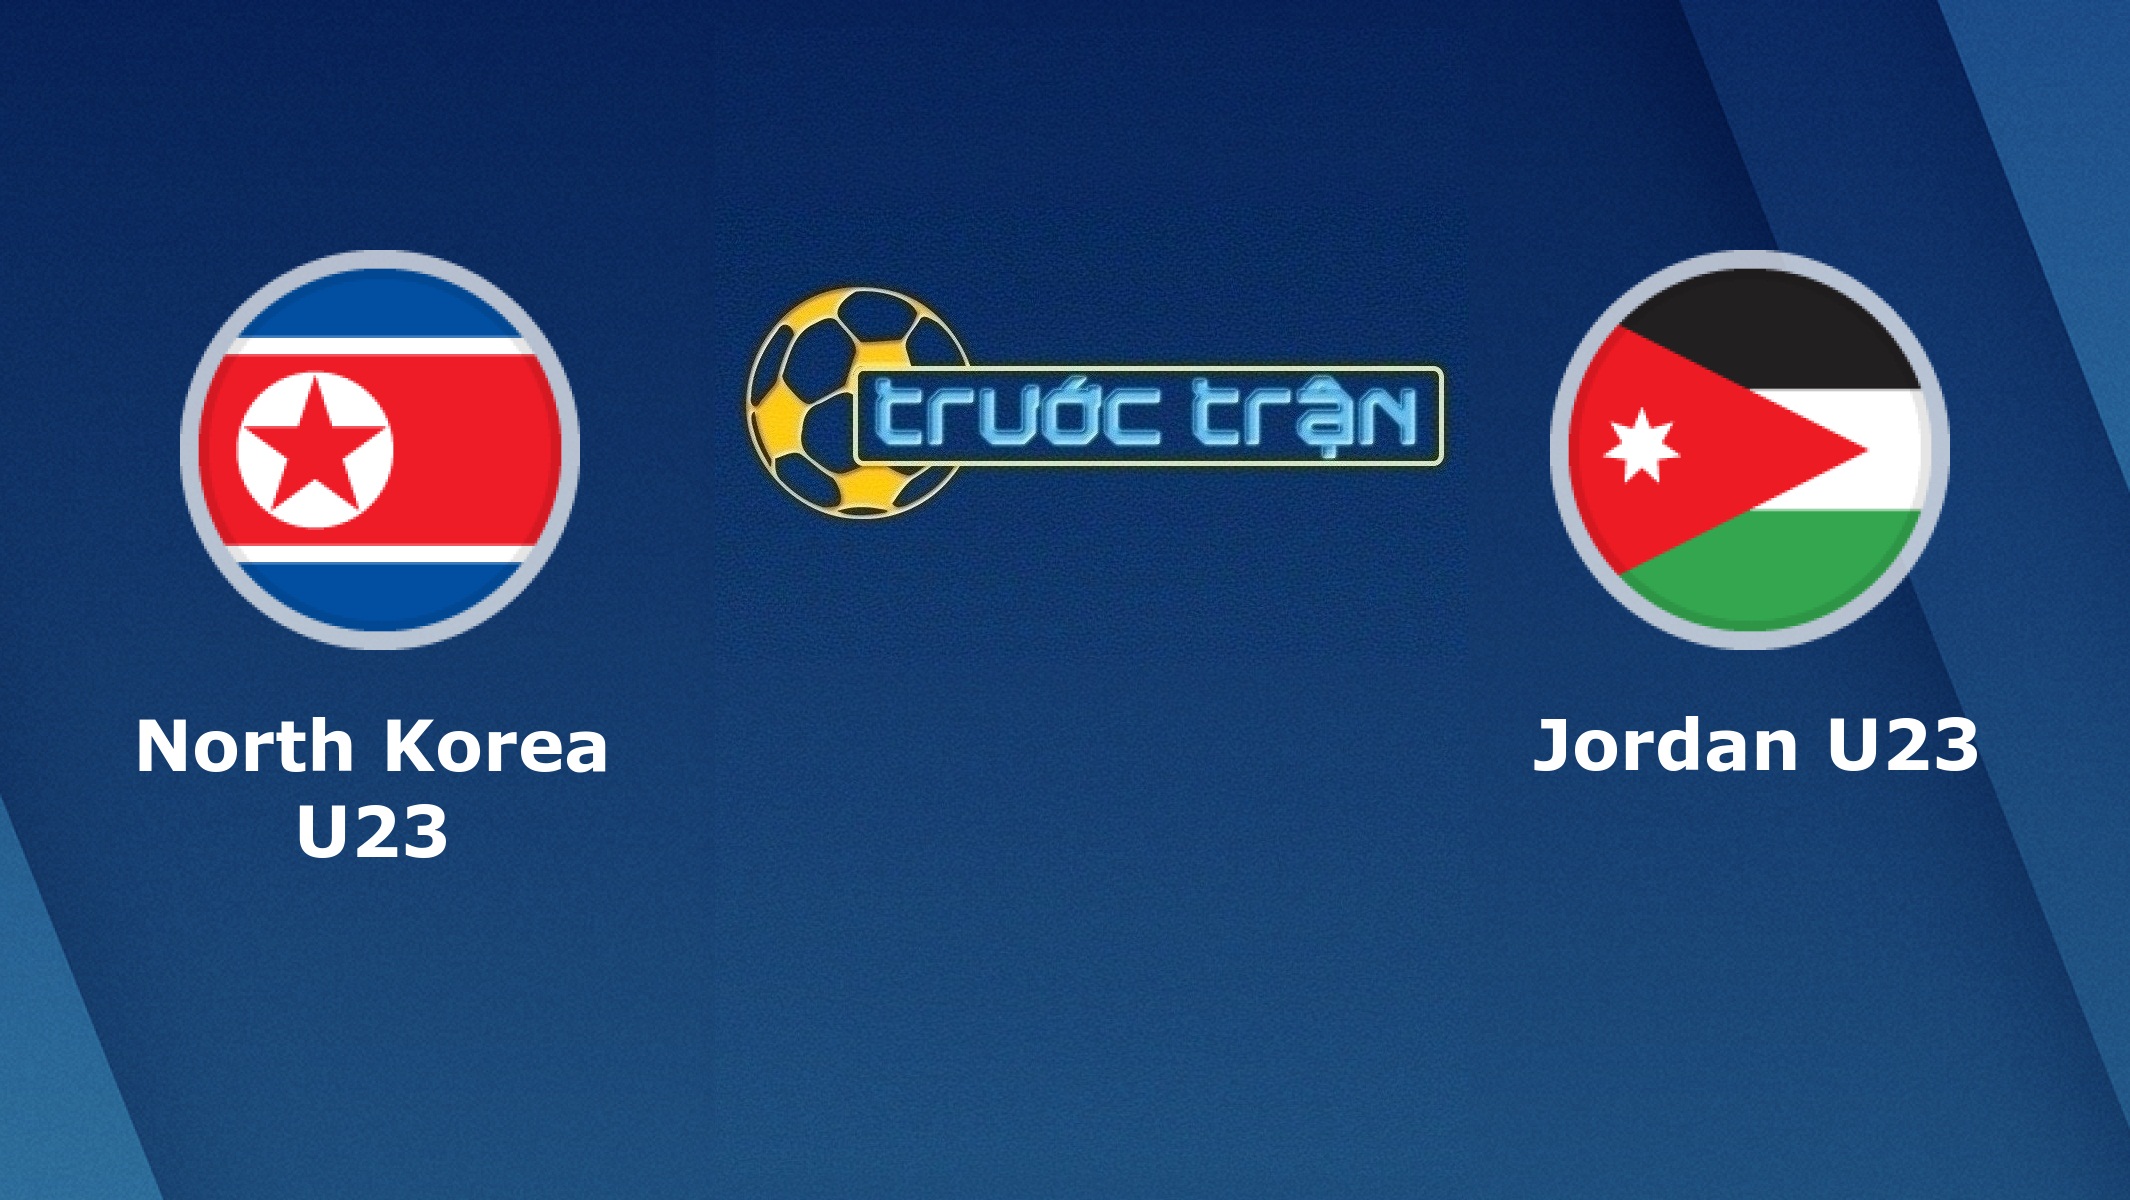 Triều Tiên U23 vs Jordan U23 – Tip kèo bóng đá hôm nay – 10/01